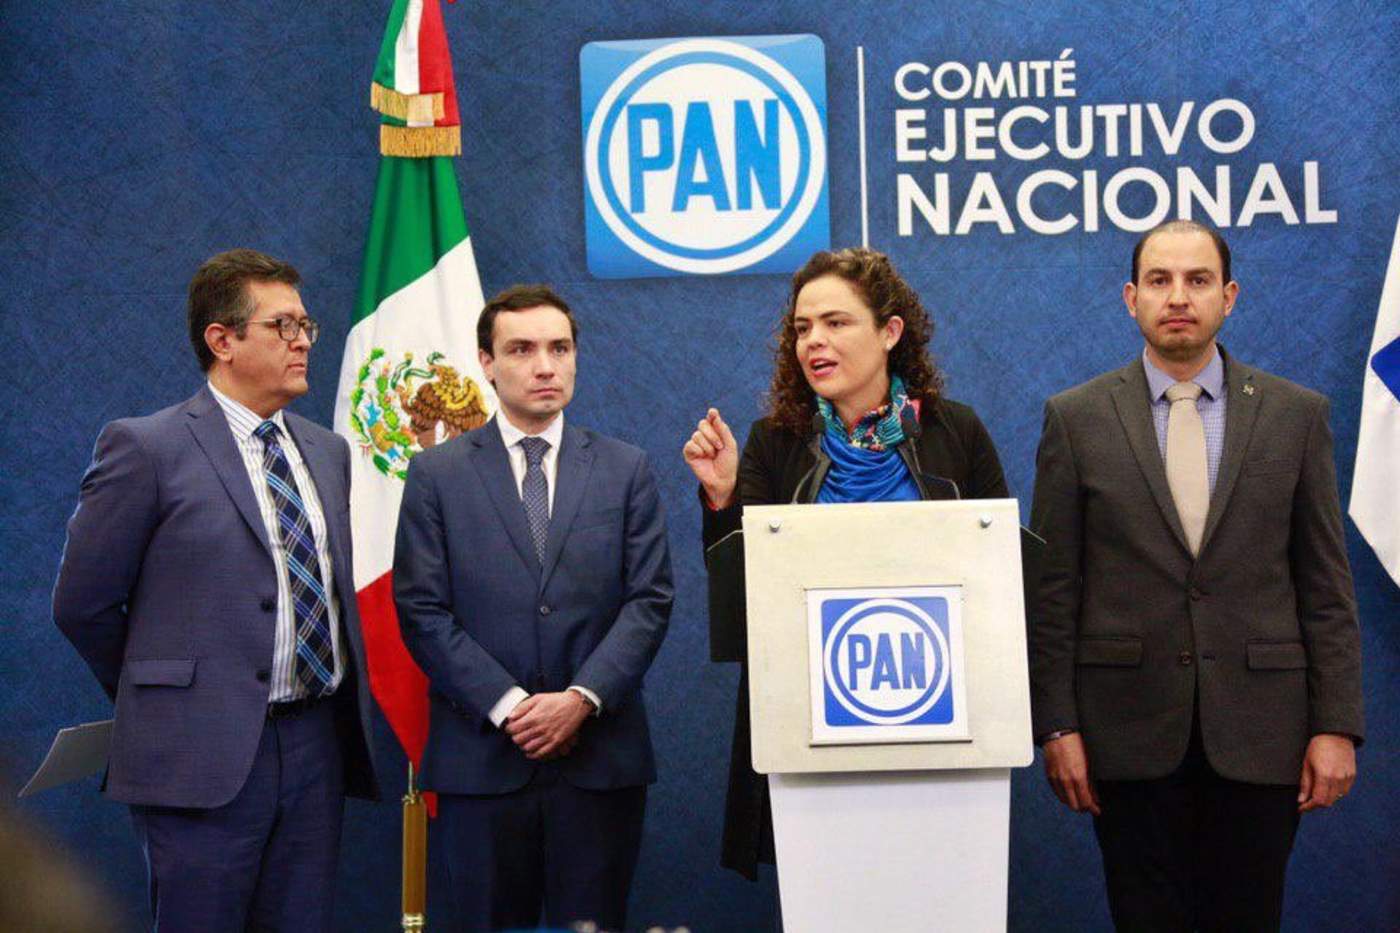 Vergonzoso, papel de México al mediar crisis en Venezuela: PAN. Noticias en tiempo real